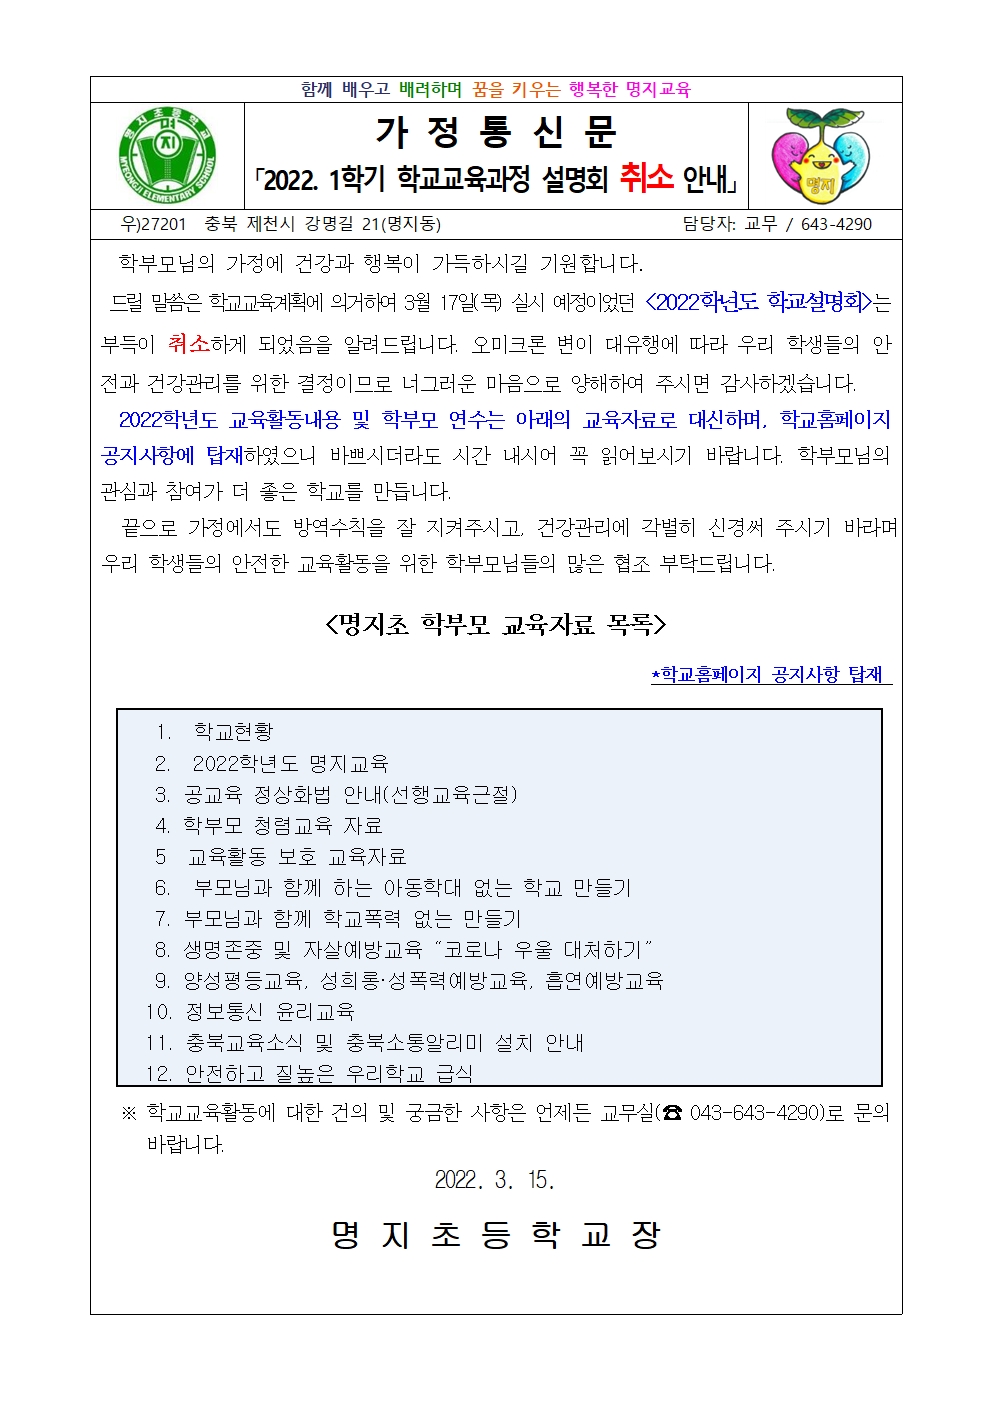 코로나 19 확산에 따른 학교설명회 취소 안내(가정통신문)